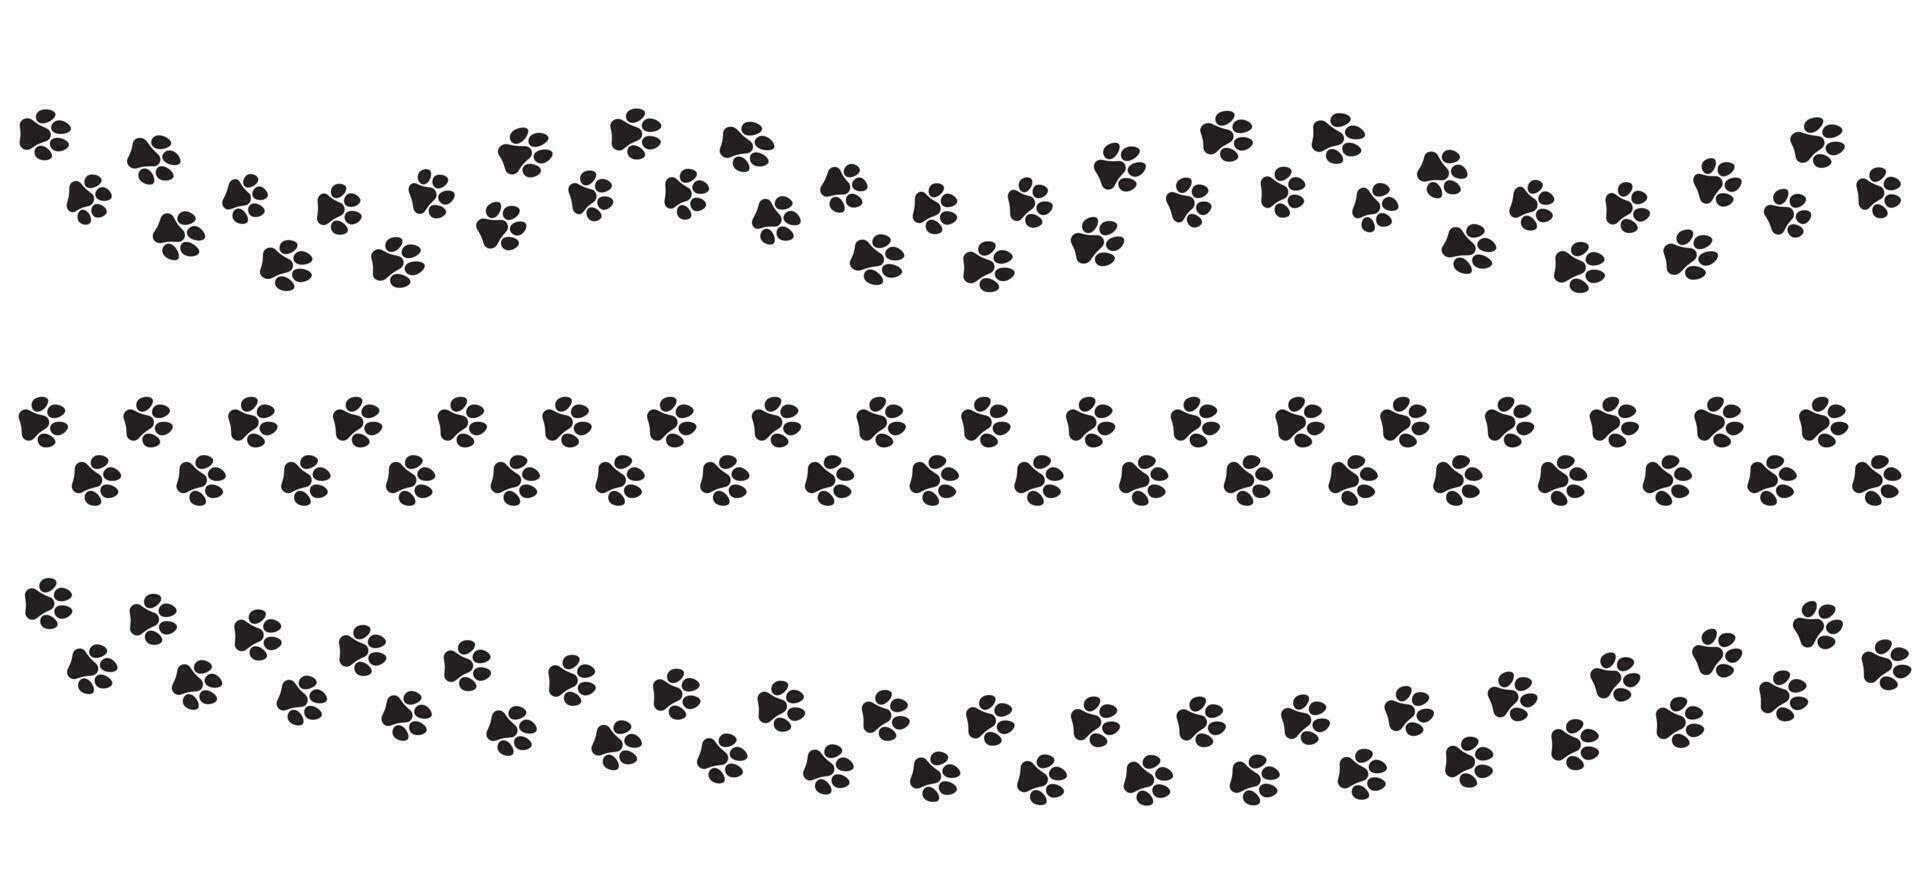 djur- Spår med Tass grafik. sällskapsdjur fotspår vektor